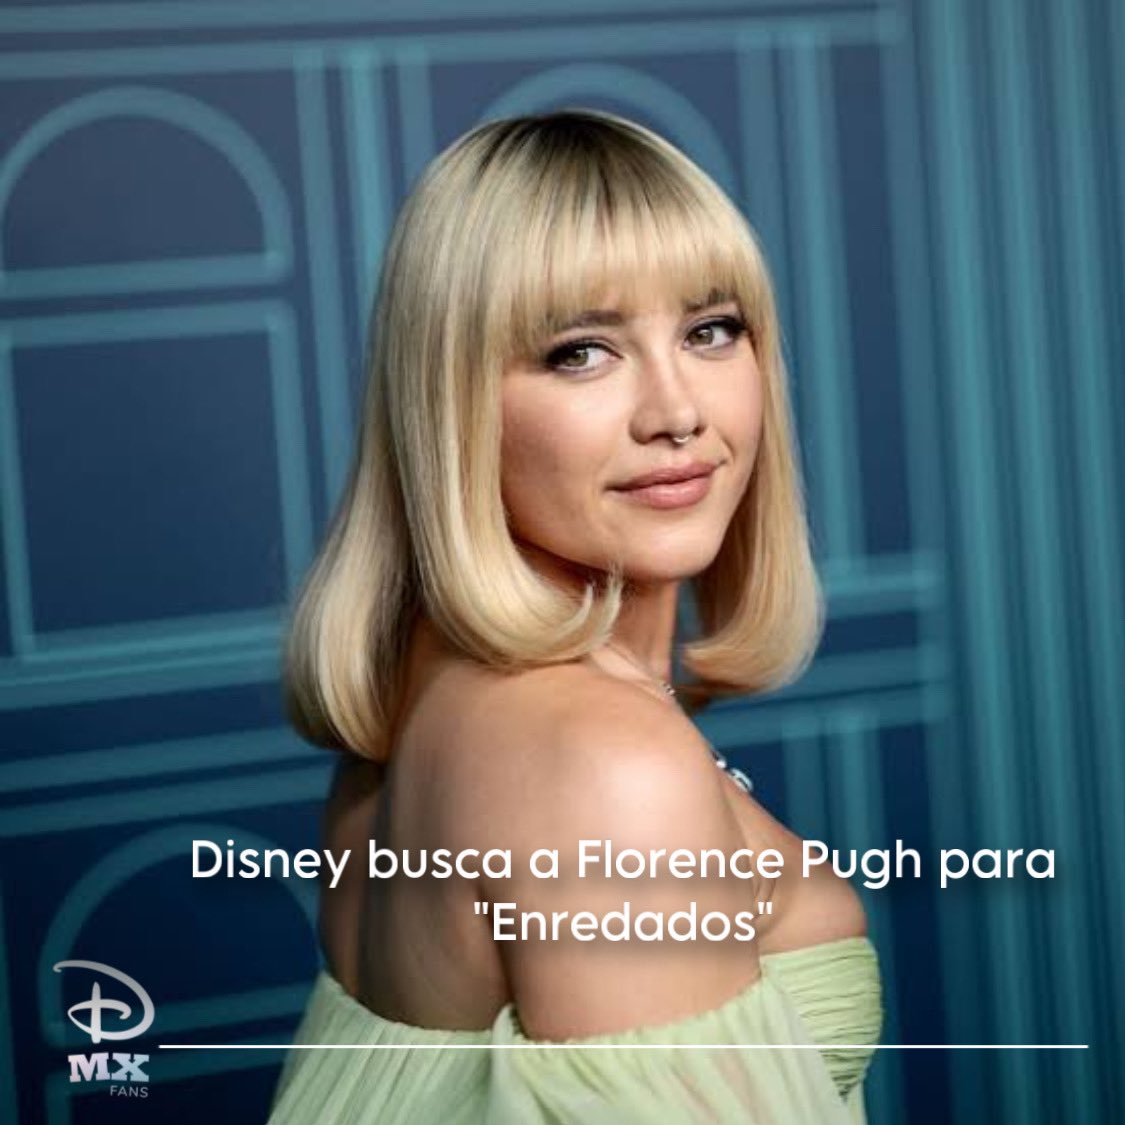 #Disney quiere a #FlorencePugh para que sea la nueva Rapunzel para el live action de #Enredados 

#PrincesasDisney #Disney100